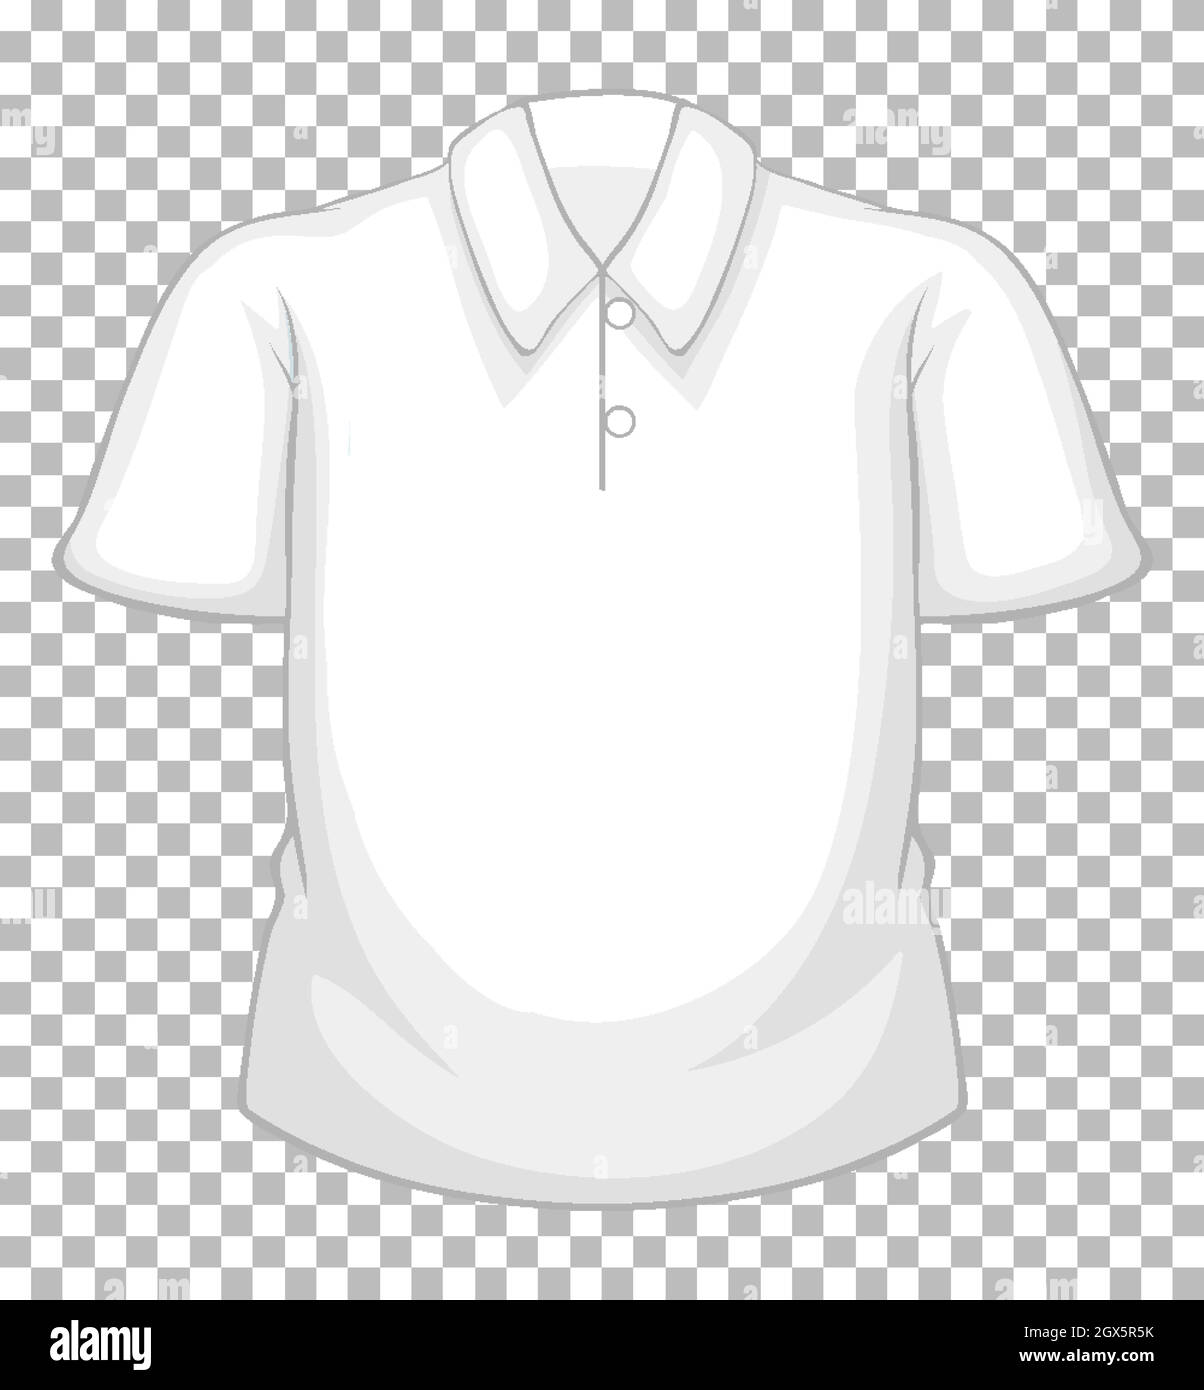 Blank weißes Kurzarmhemd mit isolierten Knöpfen auf transparentem Hintergrund Stock Vektor